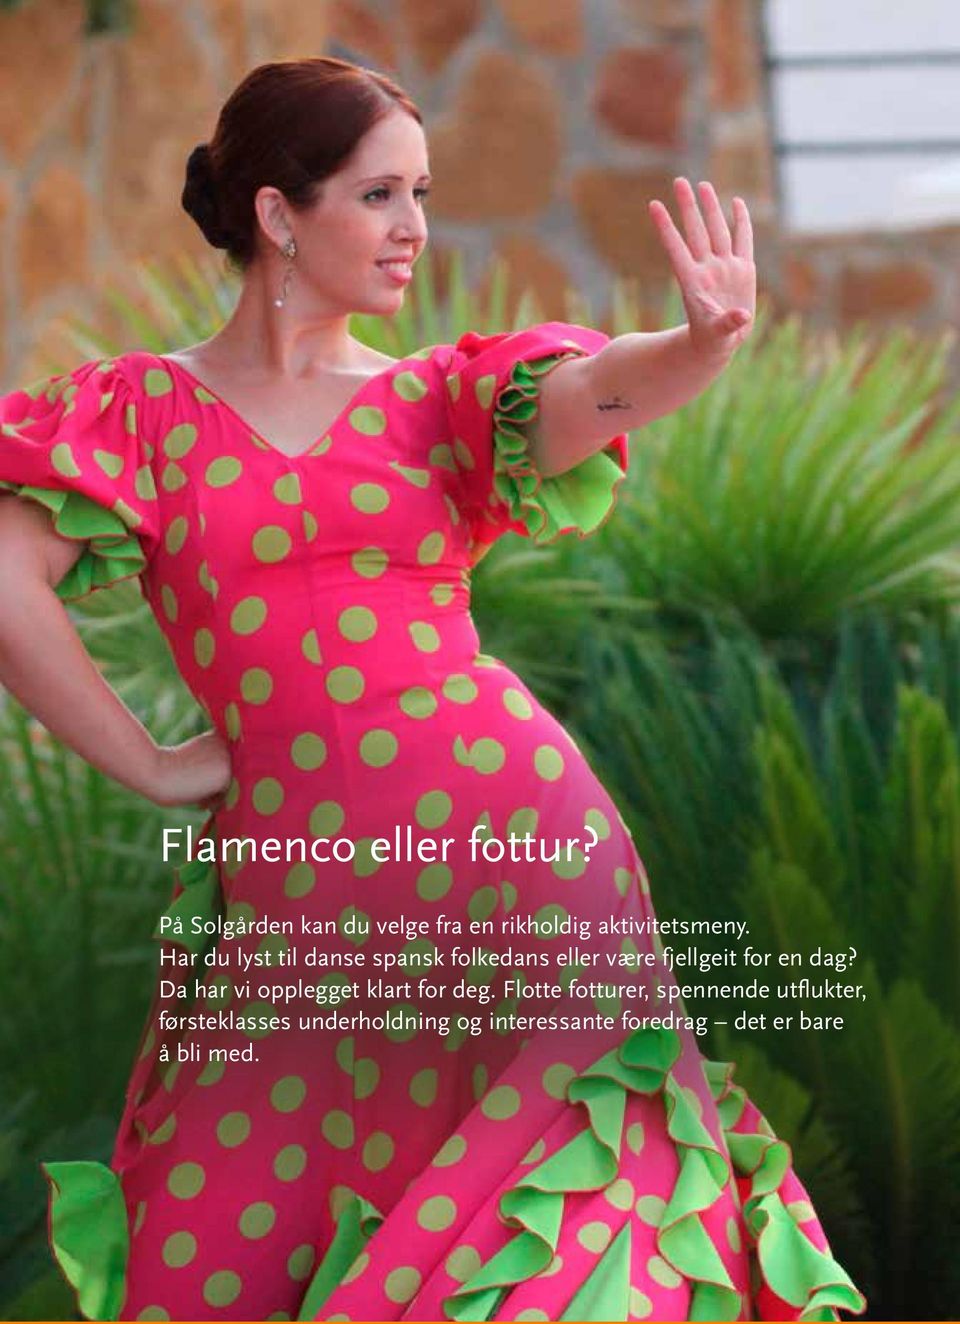 Har du lyst til danse spansk folkedans eller være fjellgeit for en dag?